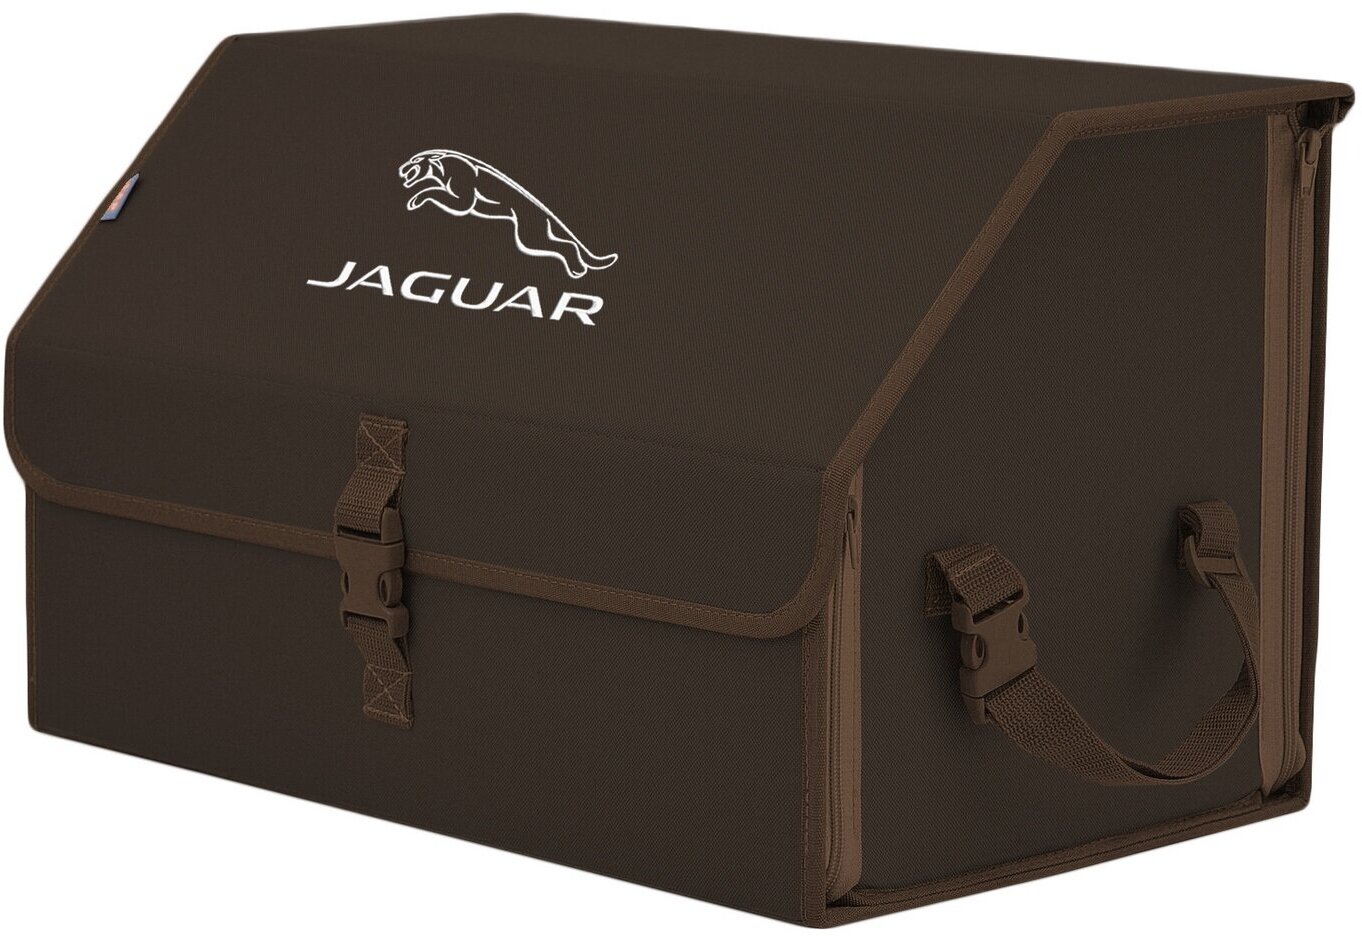 Органайзер-саквояж в багажник "Союз" (размер L). Цвет: коричневый с вышивкой Jaguar (Ягуар).